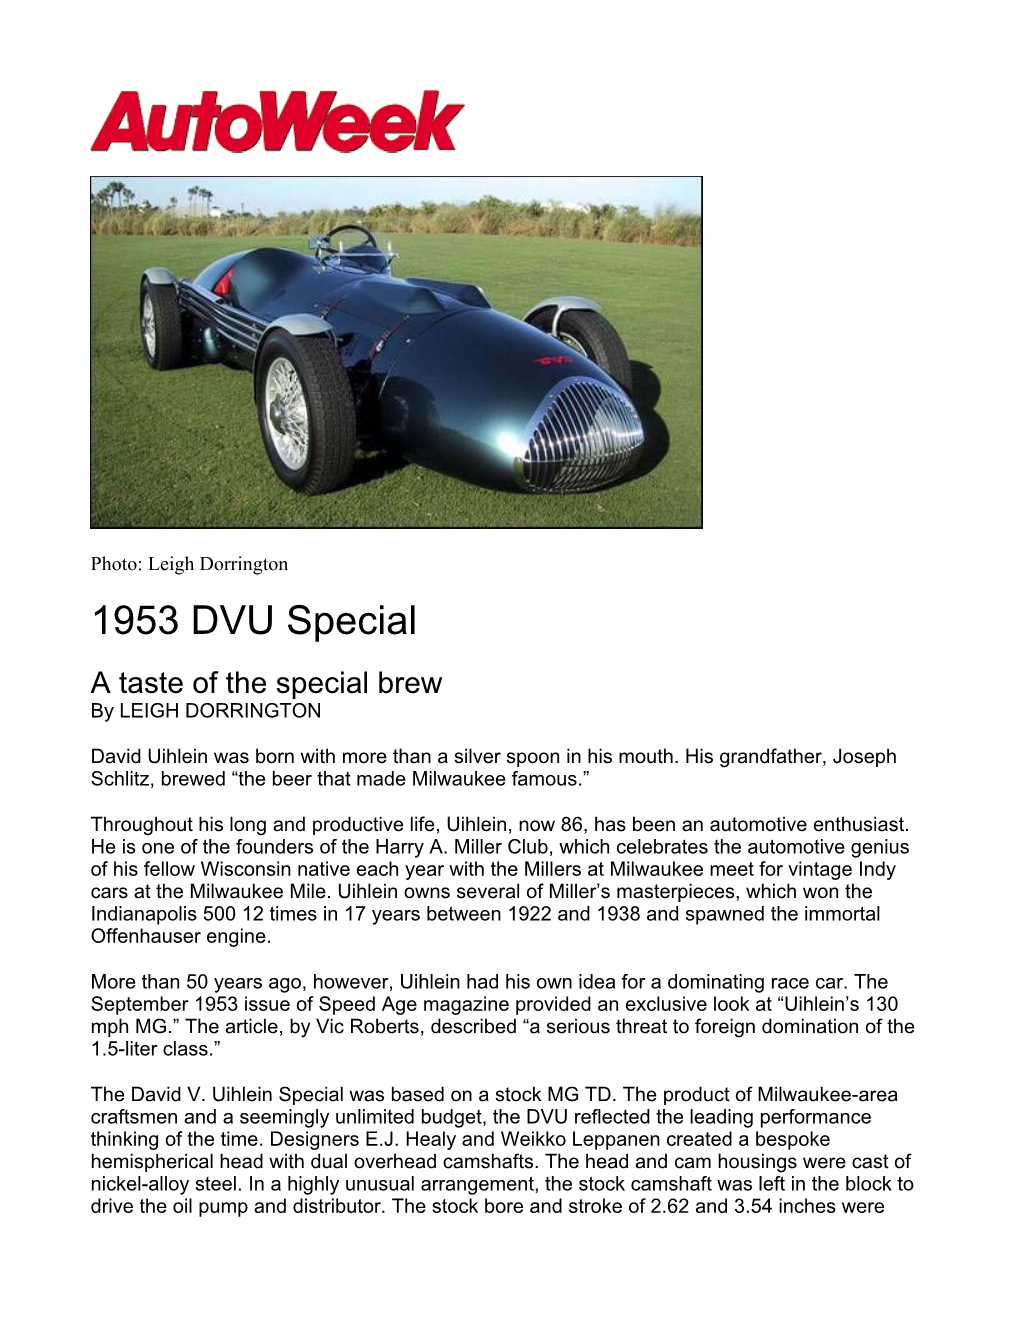 1953 DVU Special